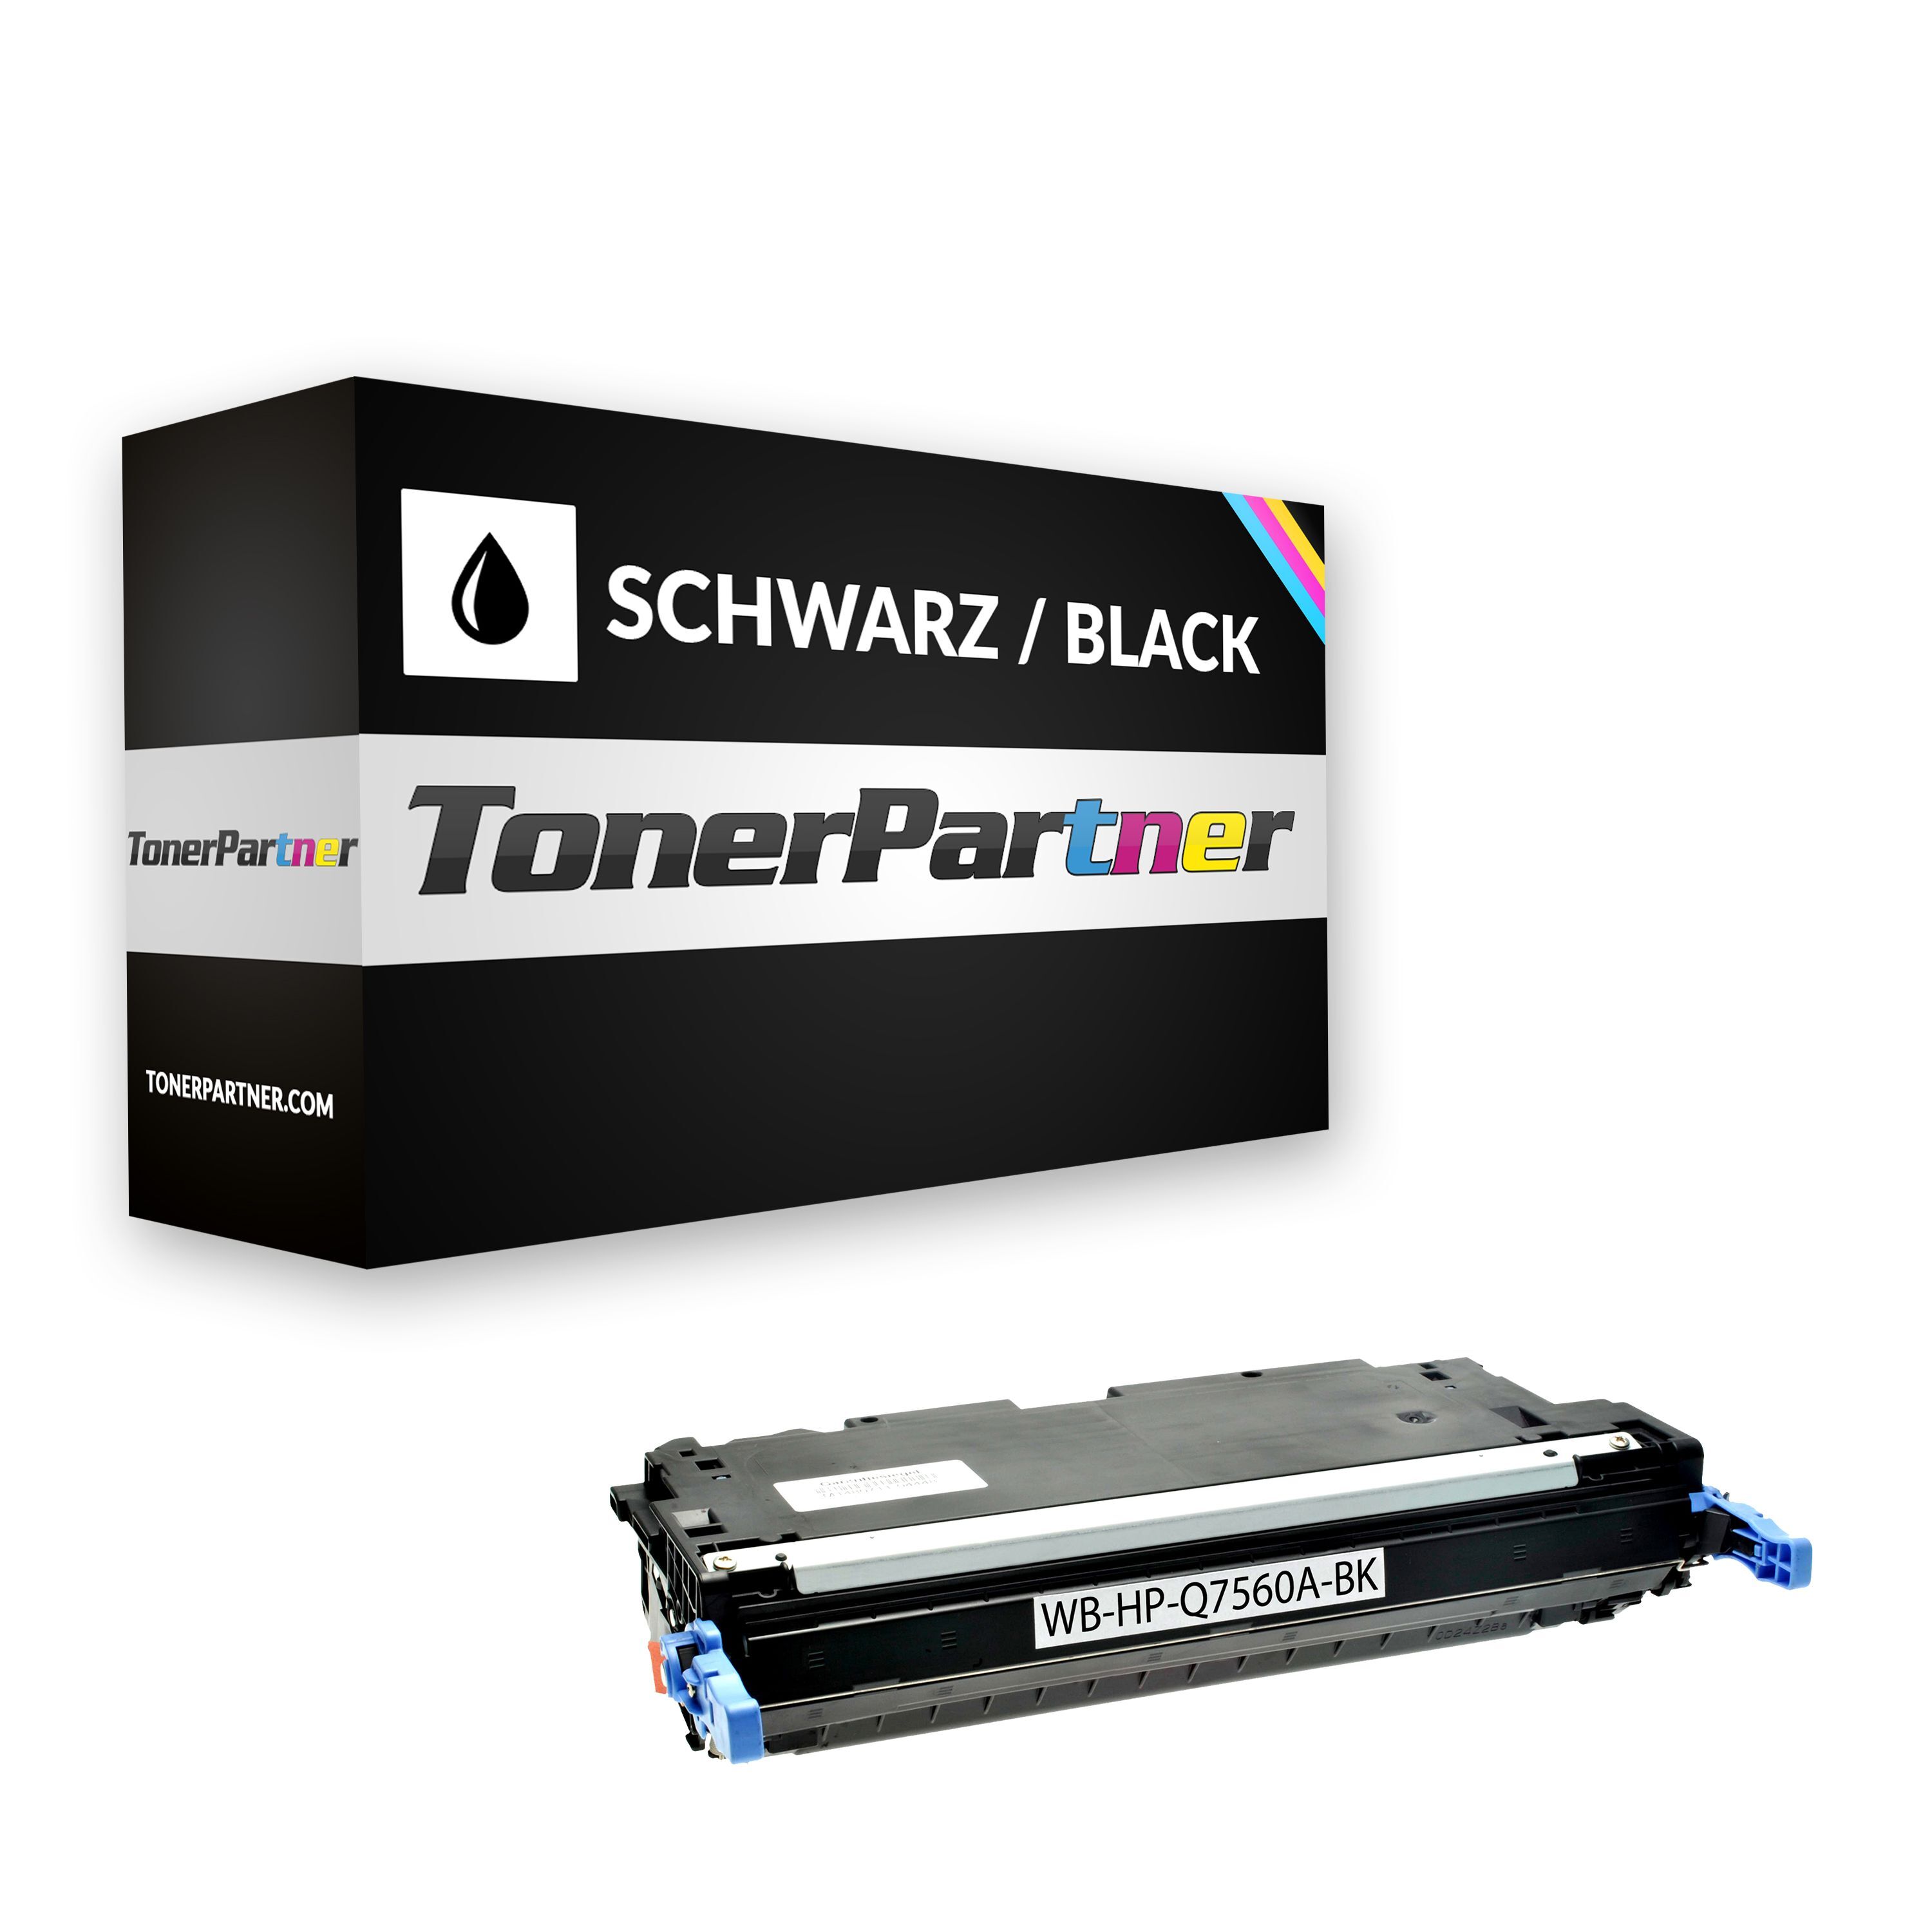 TonerPartner Kompatibel zu HP Color LaserJet 3000 Series Toner (314A / Q 7560 A) schwarz, 6.500 Seiten, 1,7 Rp pro Seite von TonerPartner